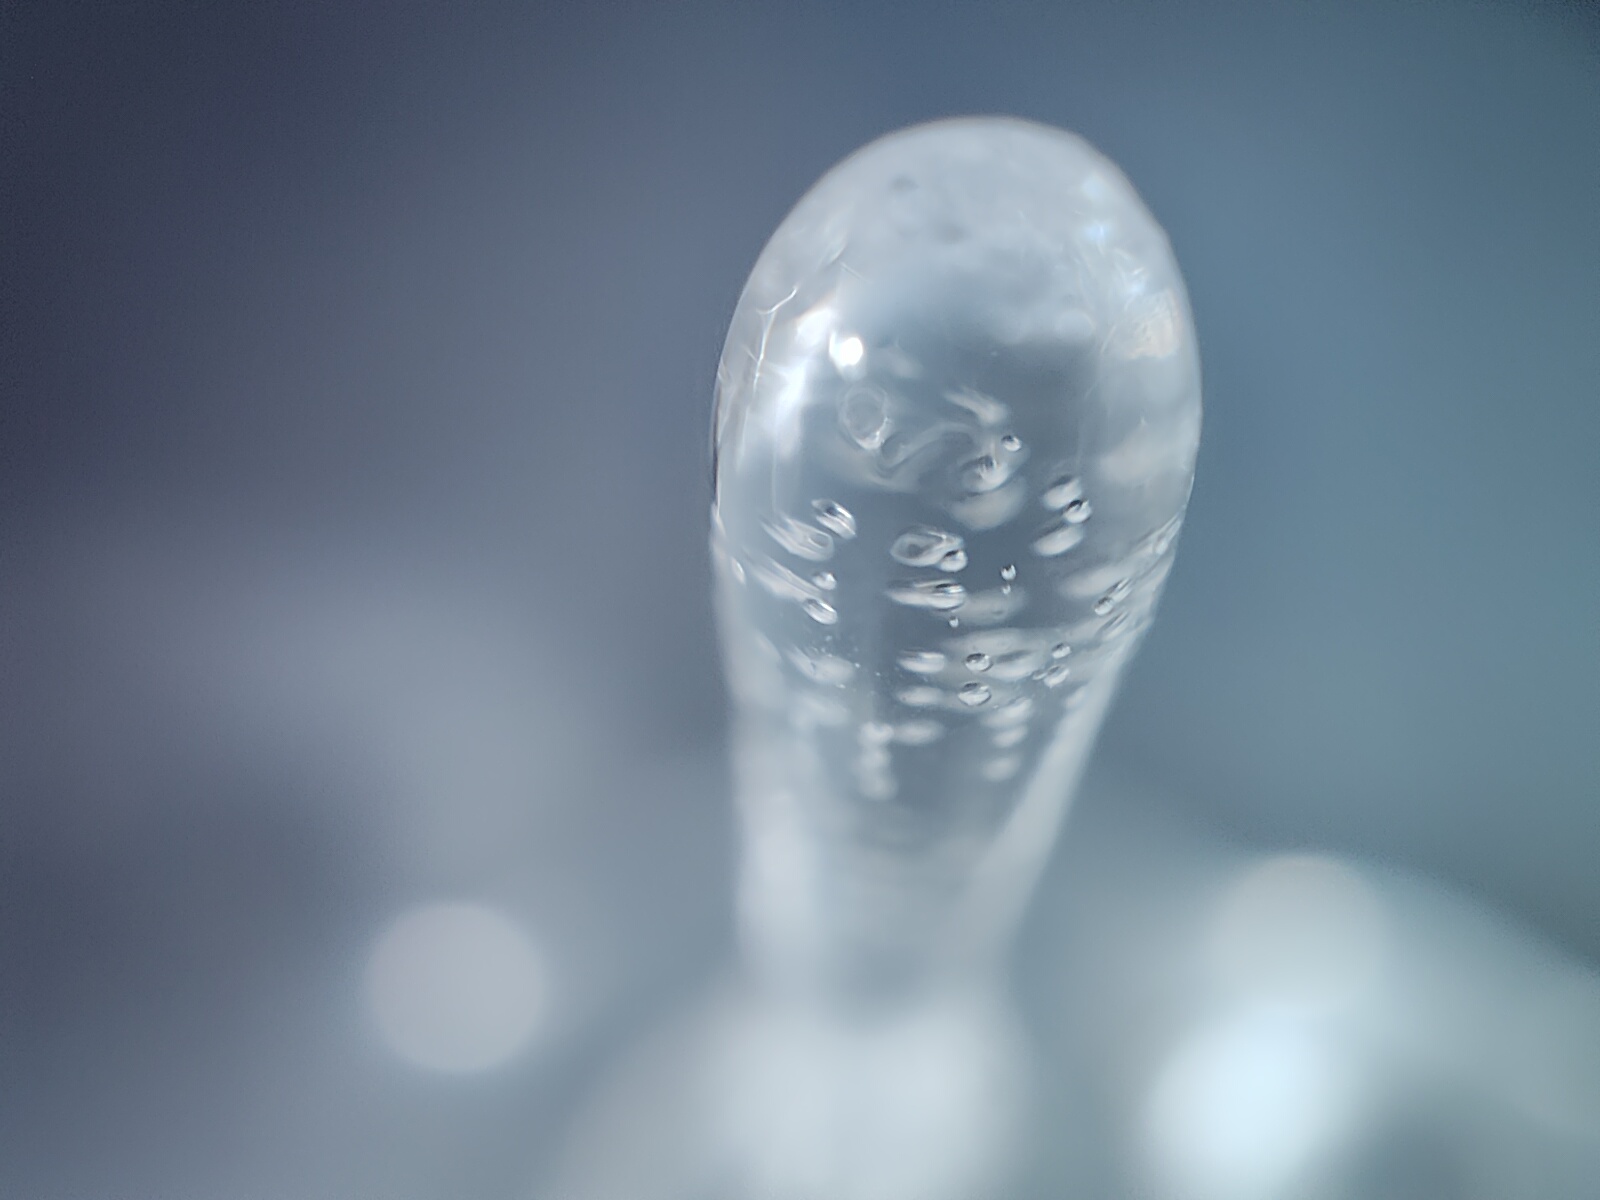 Μακρο όψη ενός παγετού που φωτογραφήθηκε με την κάμερα μικροσκοπίου του Realme GT 2 Pro.